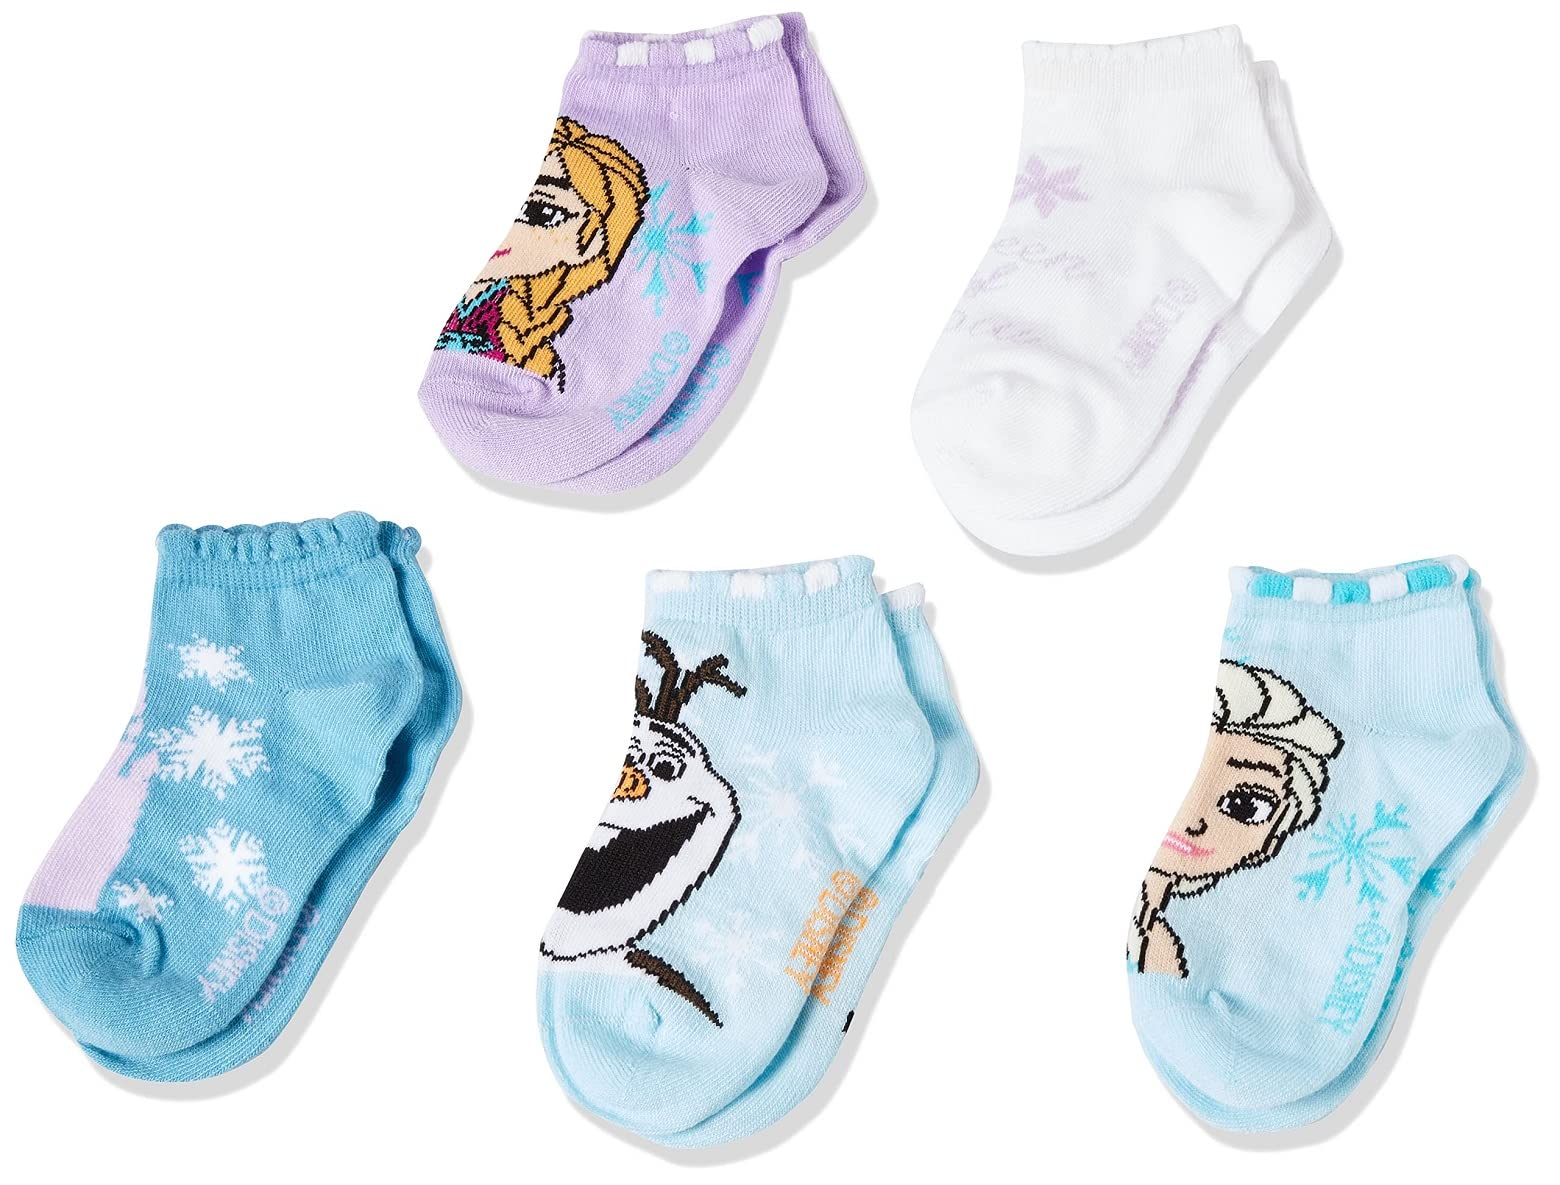 Disney Frozen Girls 5 Pack Shorty Socks